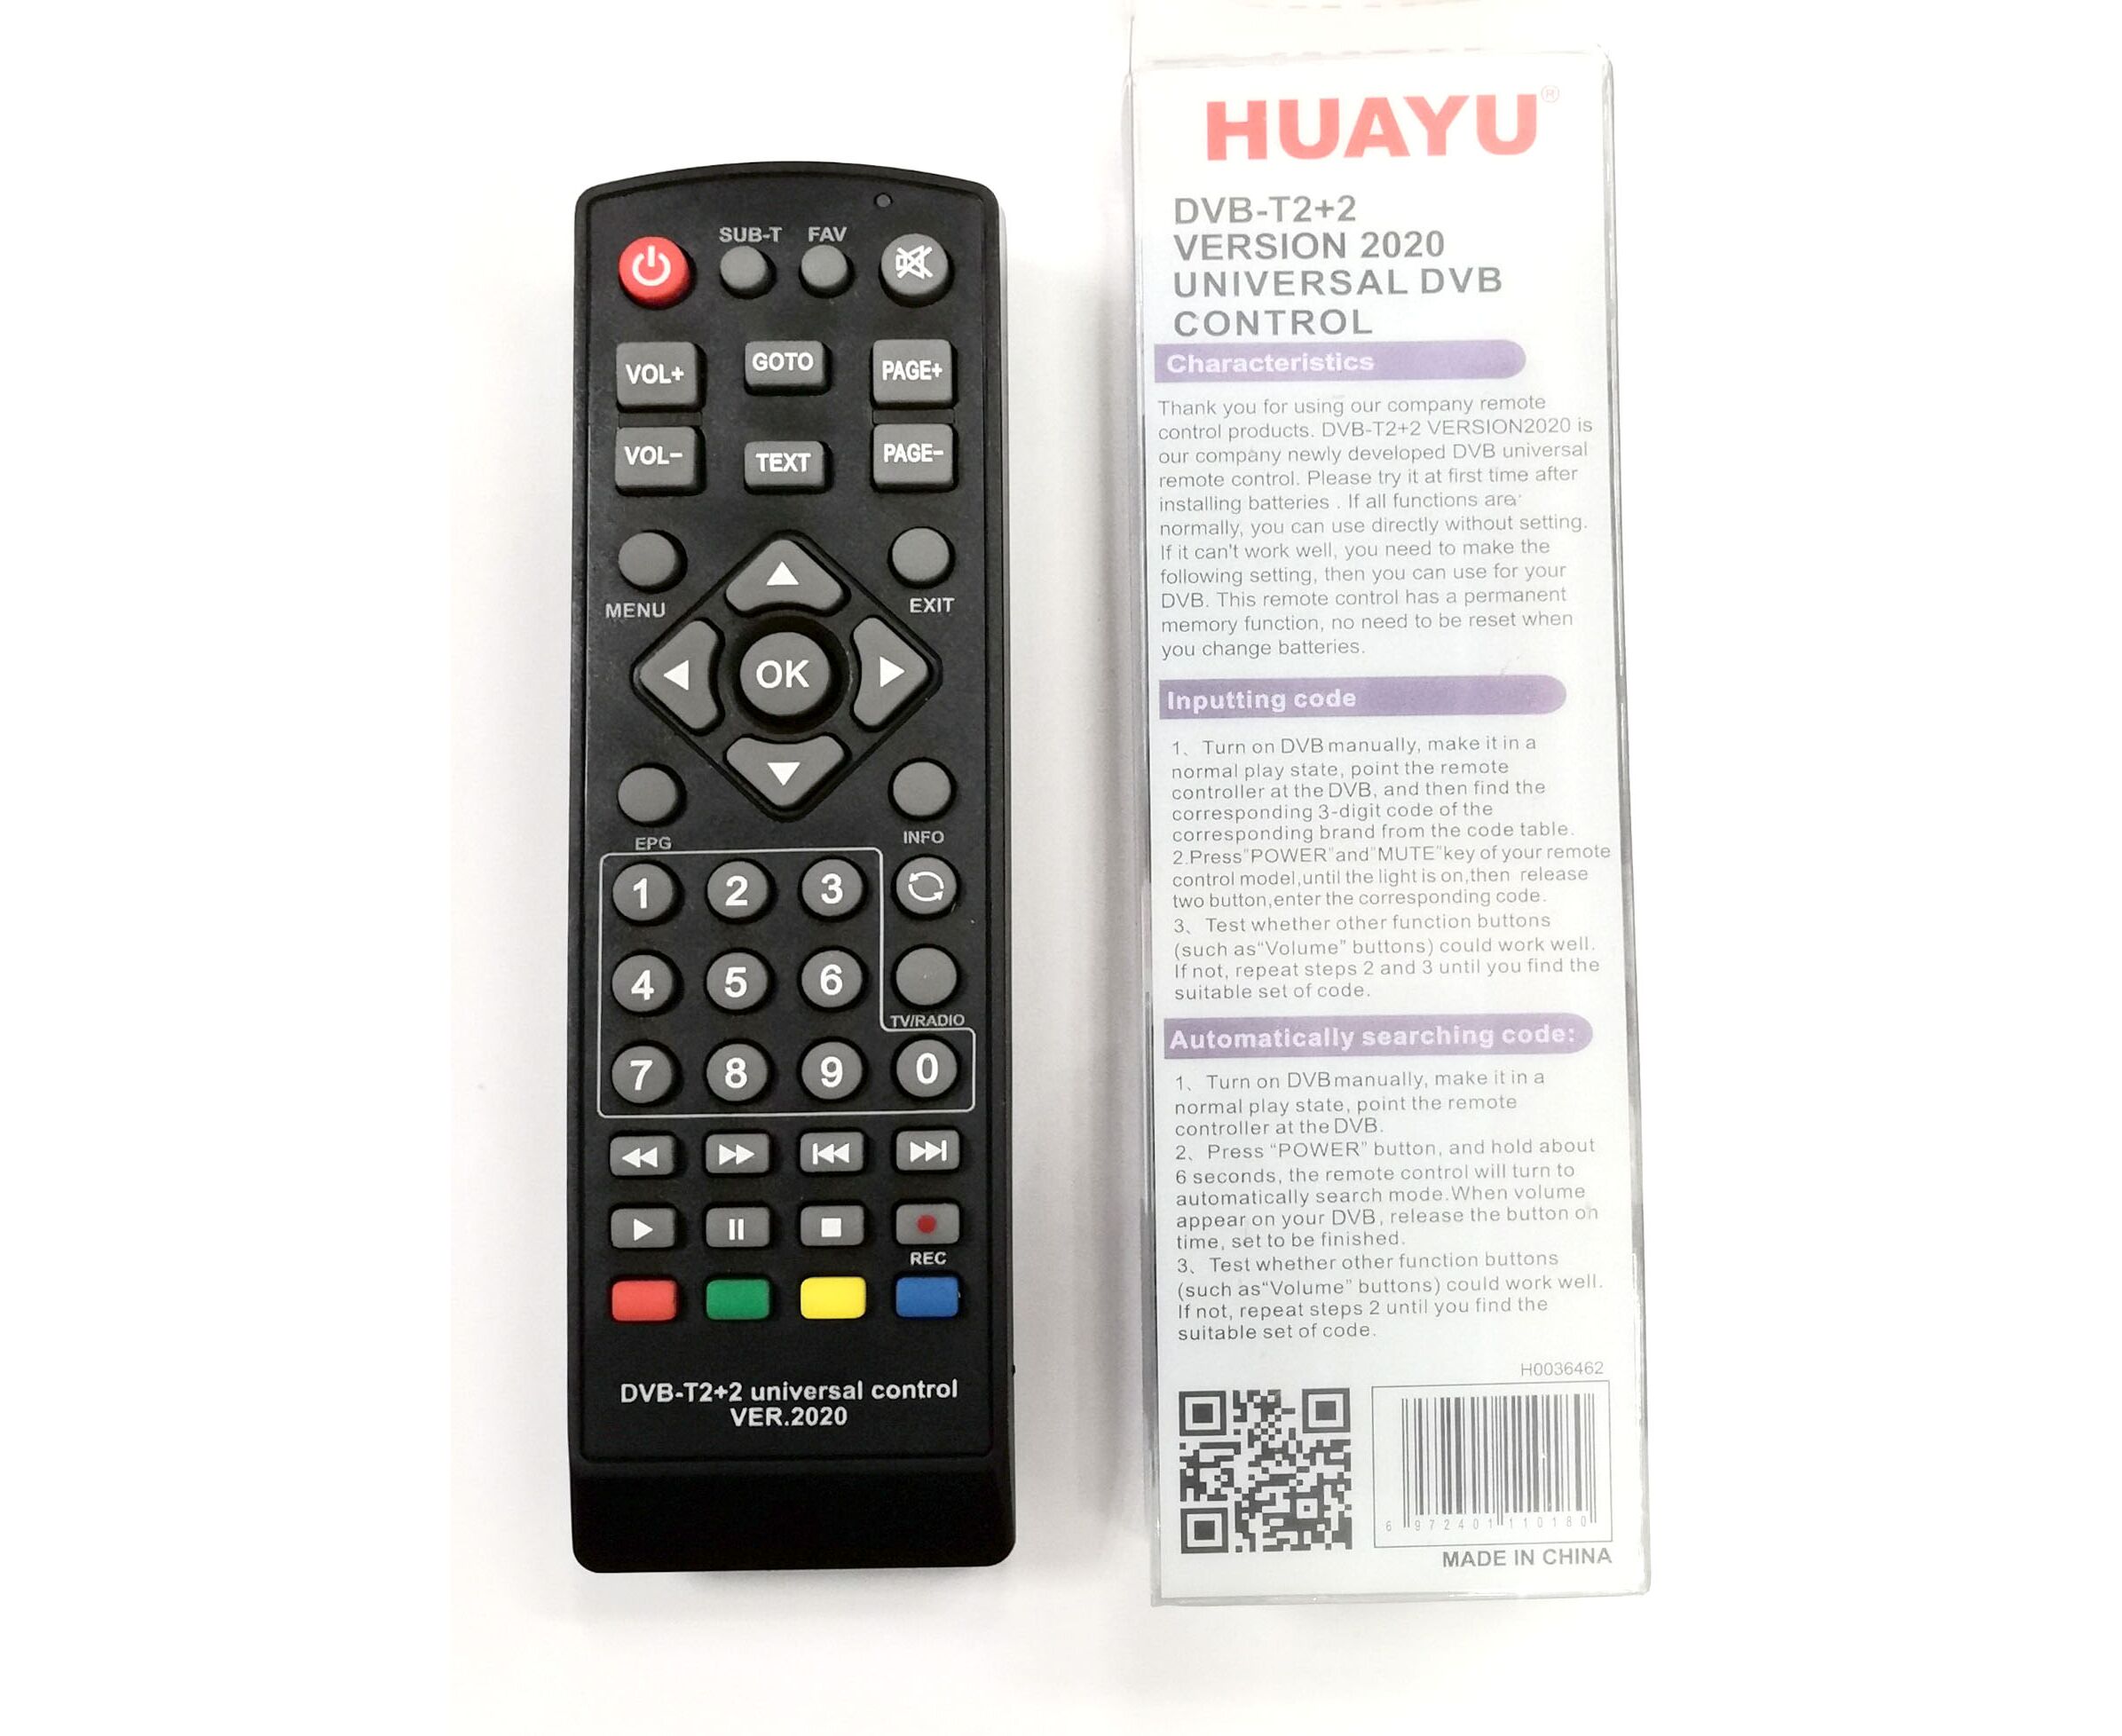 Настройка пульта dvb t2 2. Пульт универсальный Huayu для приставок DVB-t2+2 версия 2020. Универсальный пульт Huayu DVB-t2+t3. Универсальный пульт Huayu DVB-t2+2 ver.2020. Универсальный пульт Huayu DVB-t2+TV ver.2020.